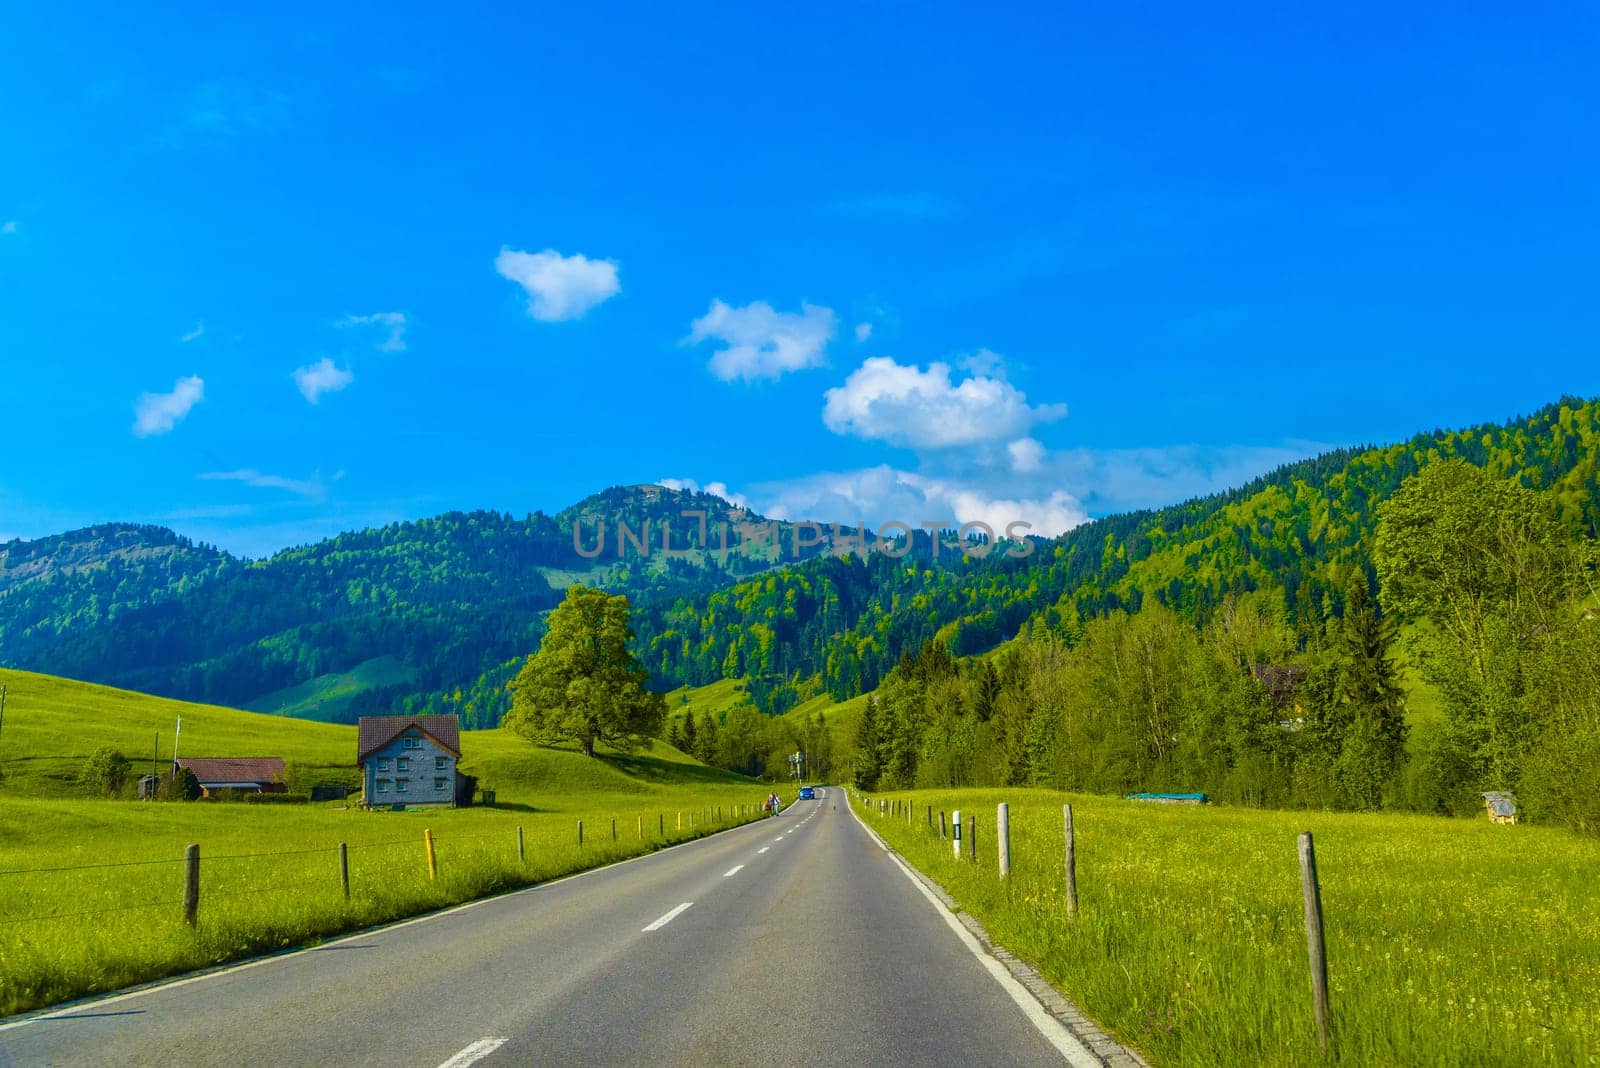 Road with green meadows and trees, Schoenengrund, Hinterland, Appenzell Ausserrhoden Switzerland.